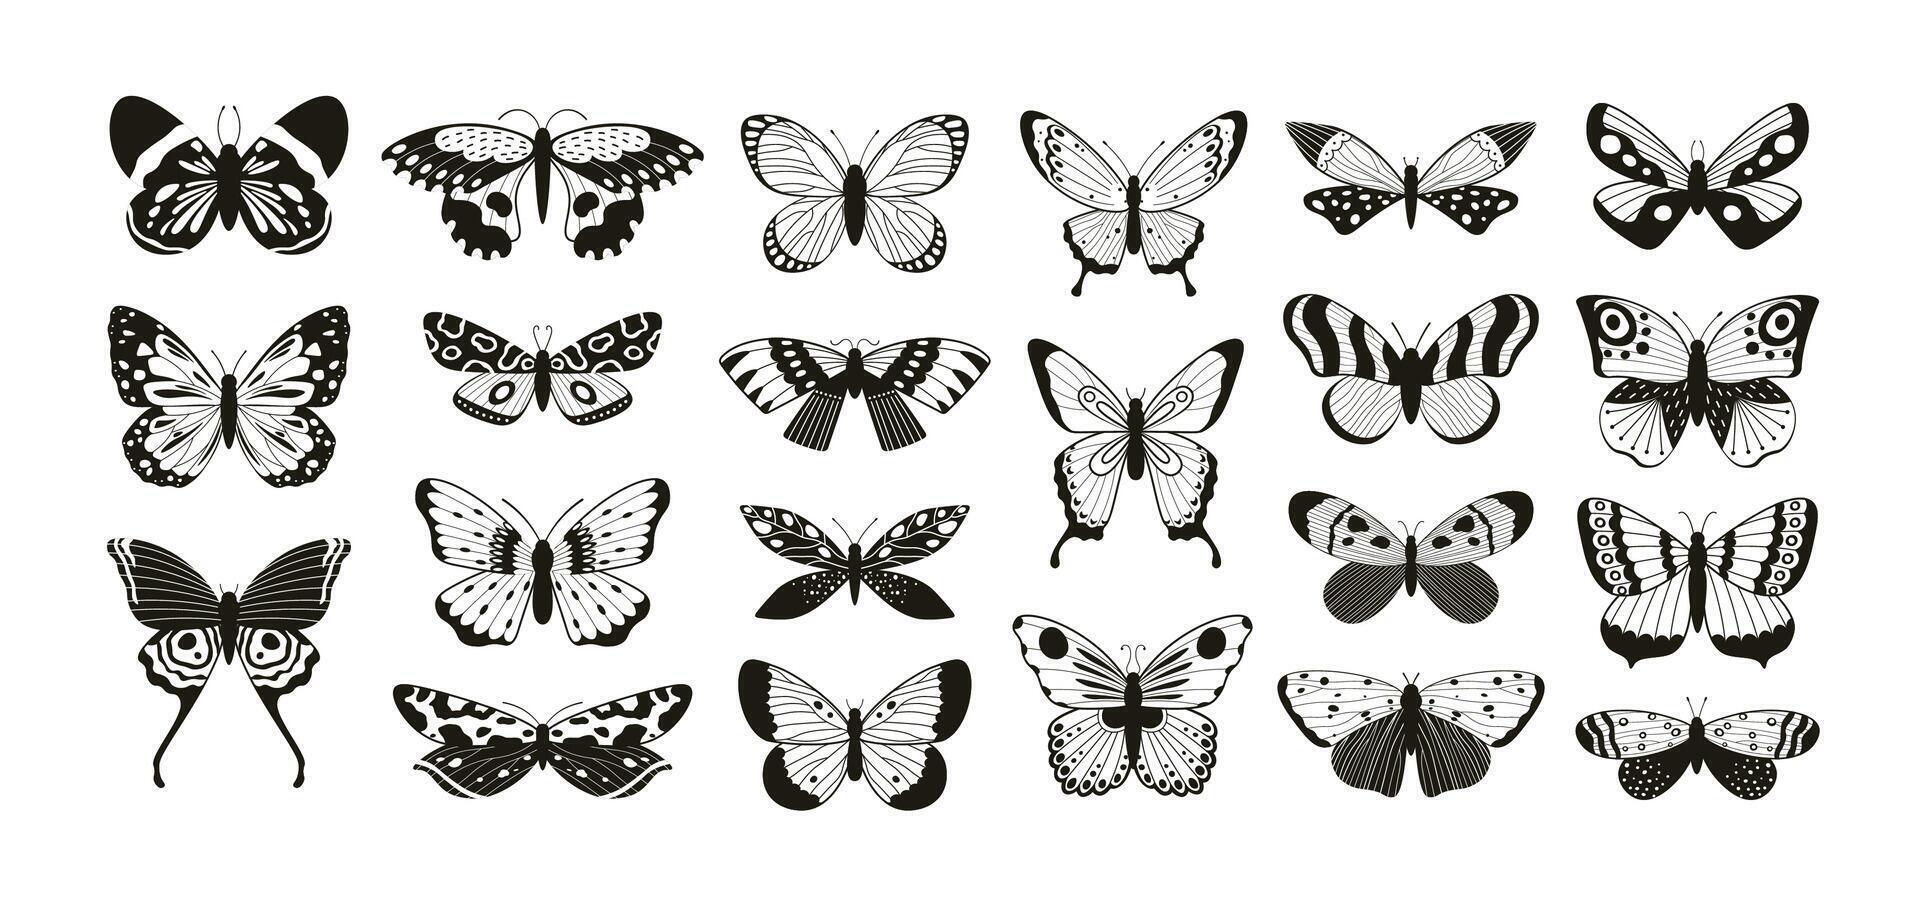 mariposas siluetas polilla y mariposa alas modelo láser cortar describir. volador insecto decorativo elemento. mariposas tatuaje vector conjunto